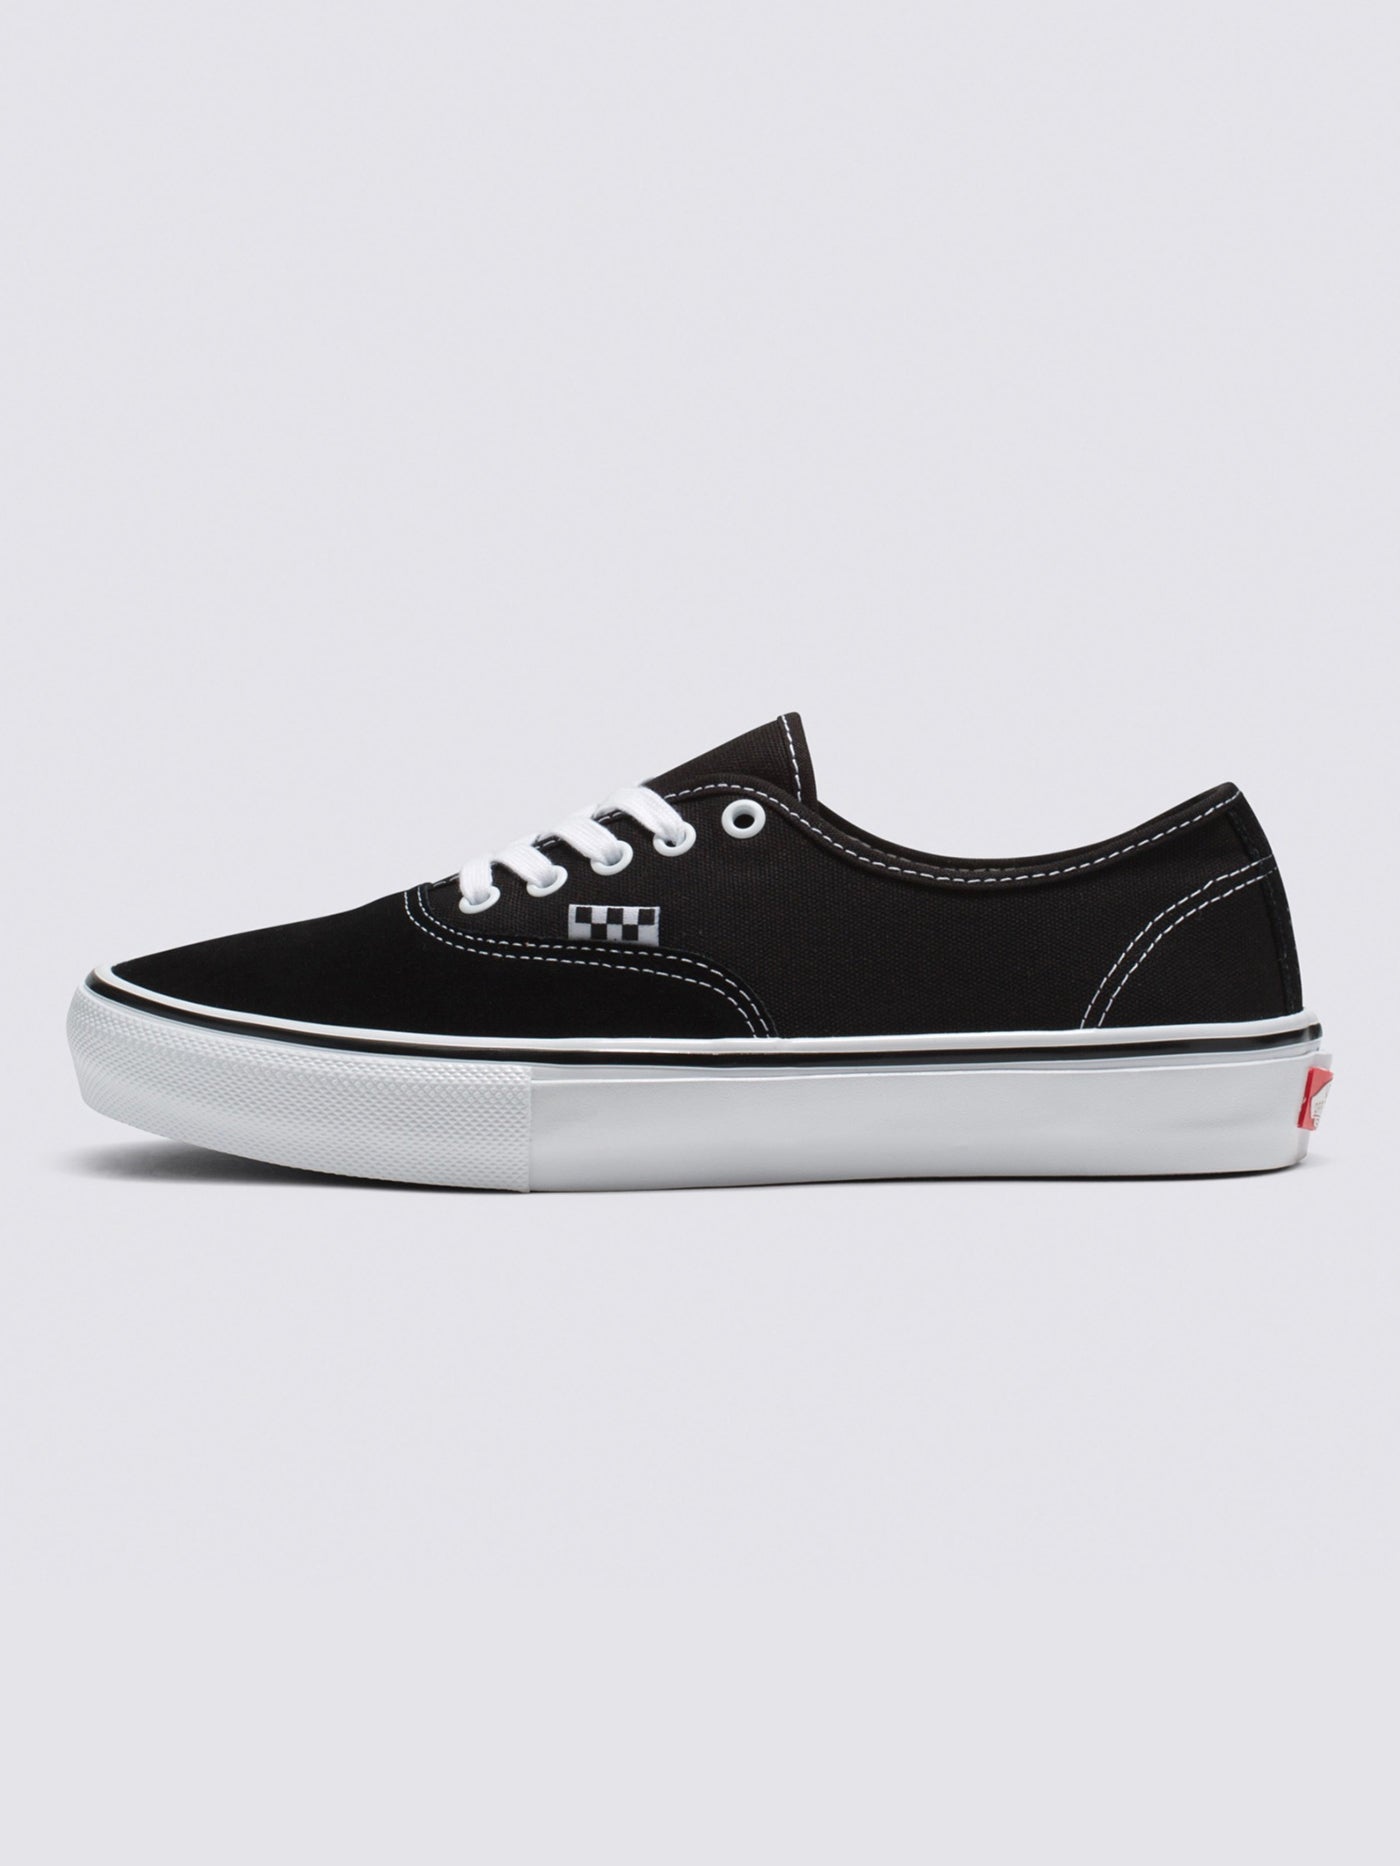 Vans Skate Authentic Black/White Shoes